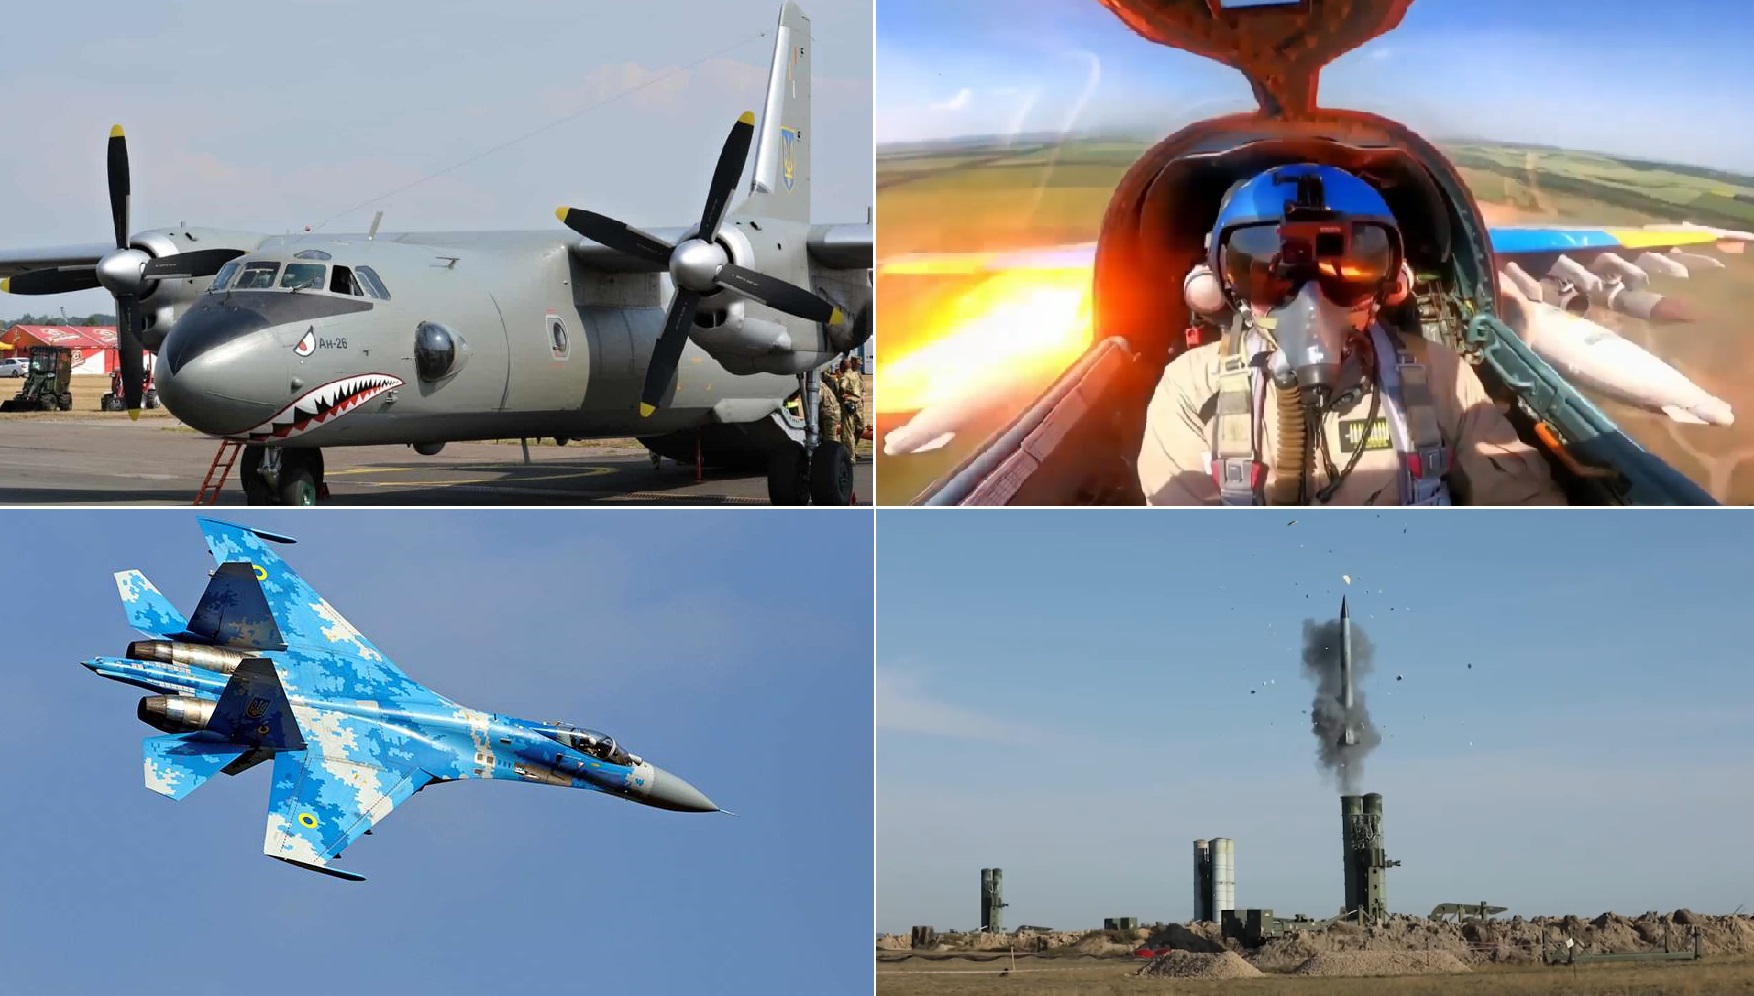 ЗРК С-300, истребители Су-27, вертолёты Ми-8 и дроны Bayraktar TB2 в действии – эффектное видео ко Дню Воздушных Сил Украины